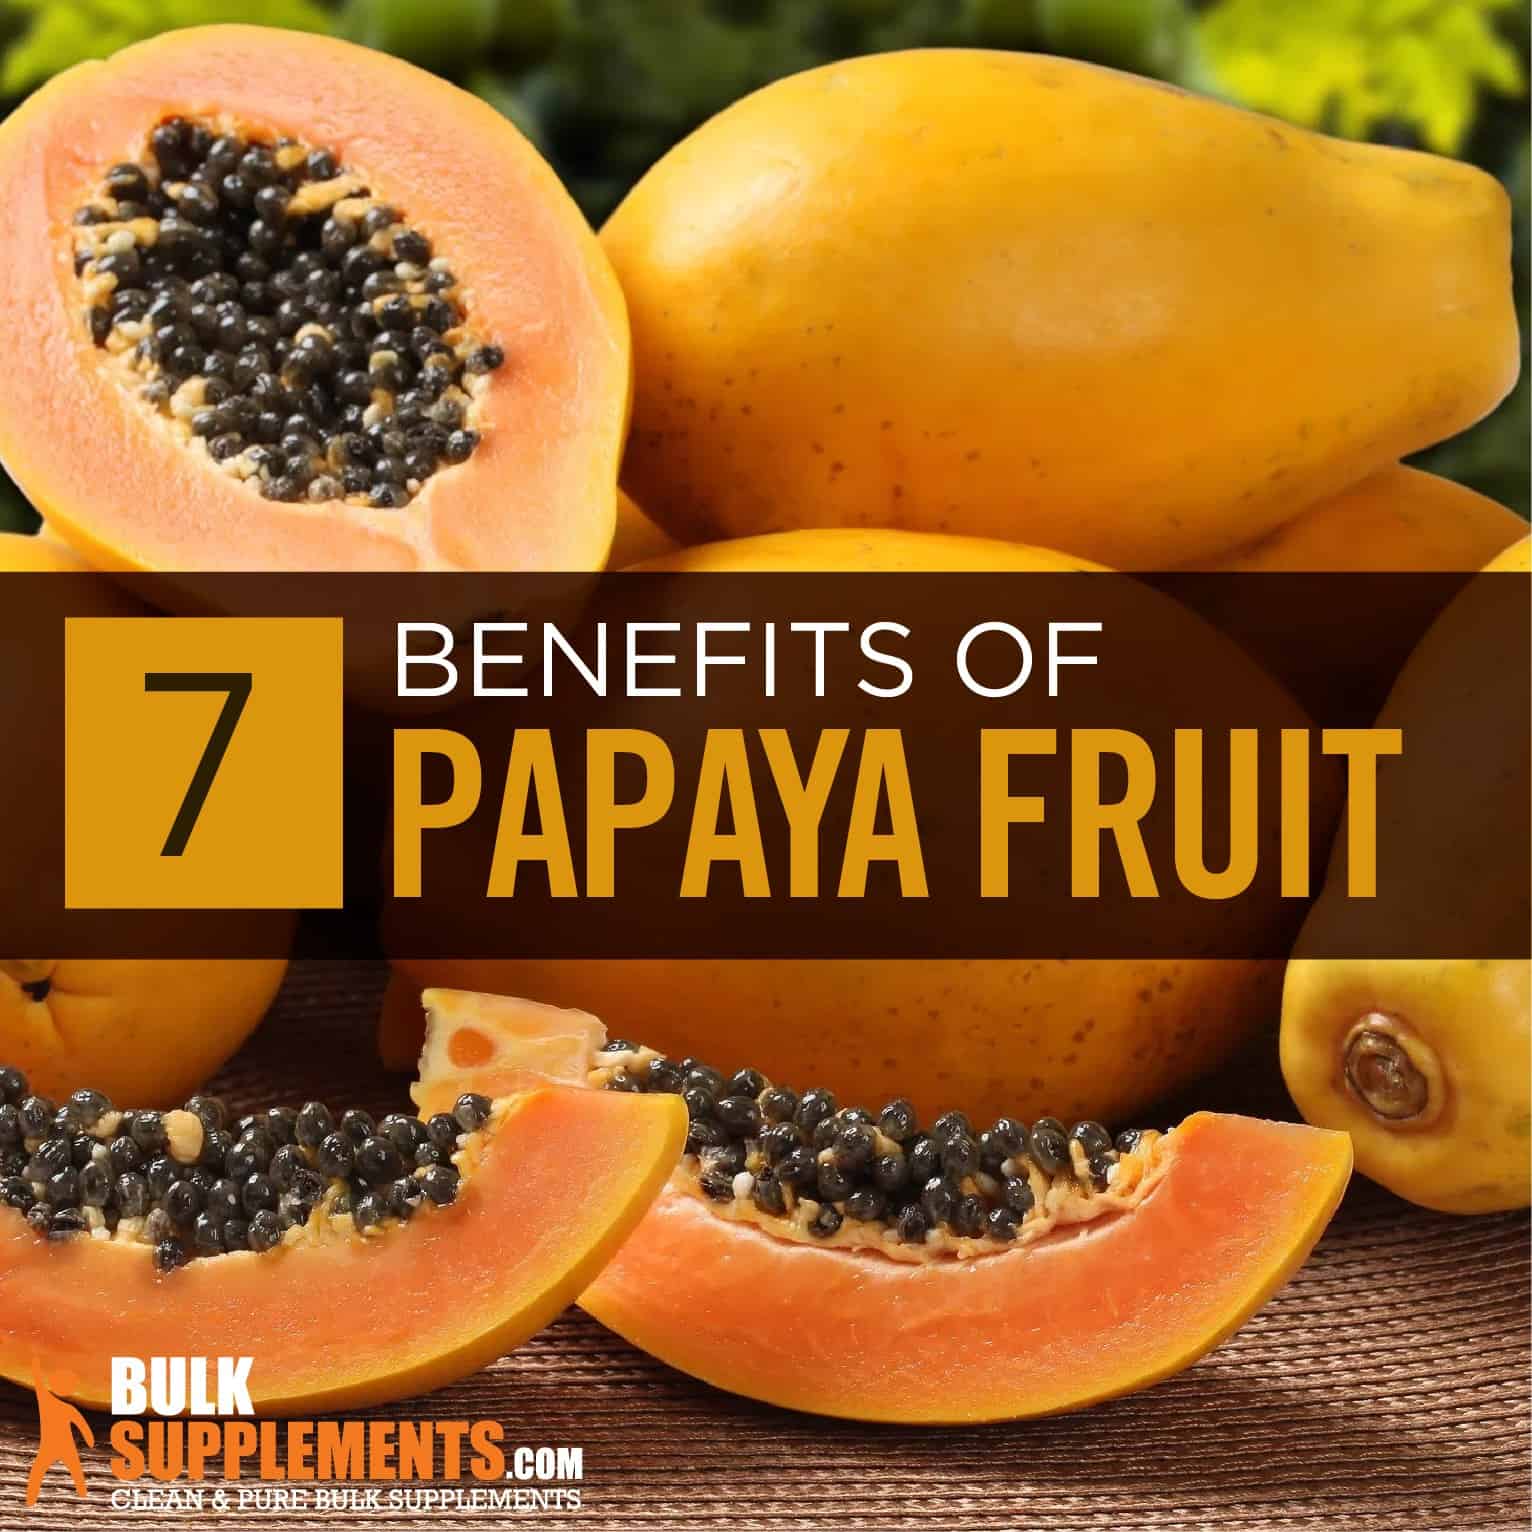 Papaya Fruit Extract: Benefits, Side Effects & Dosage